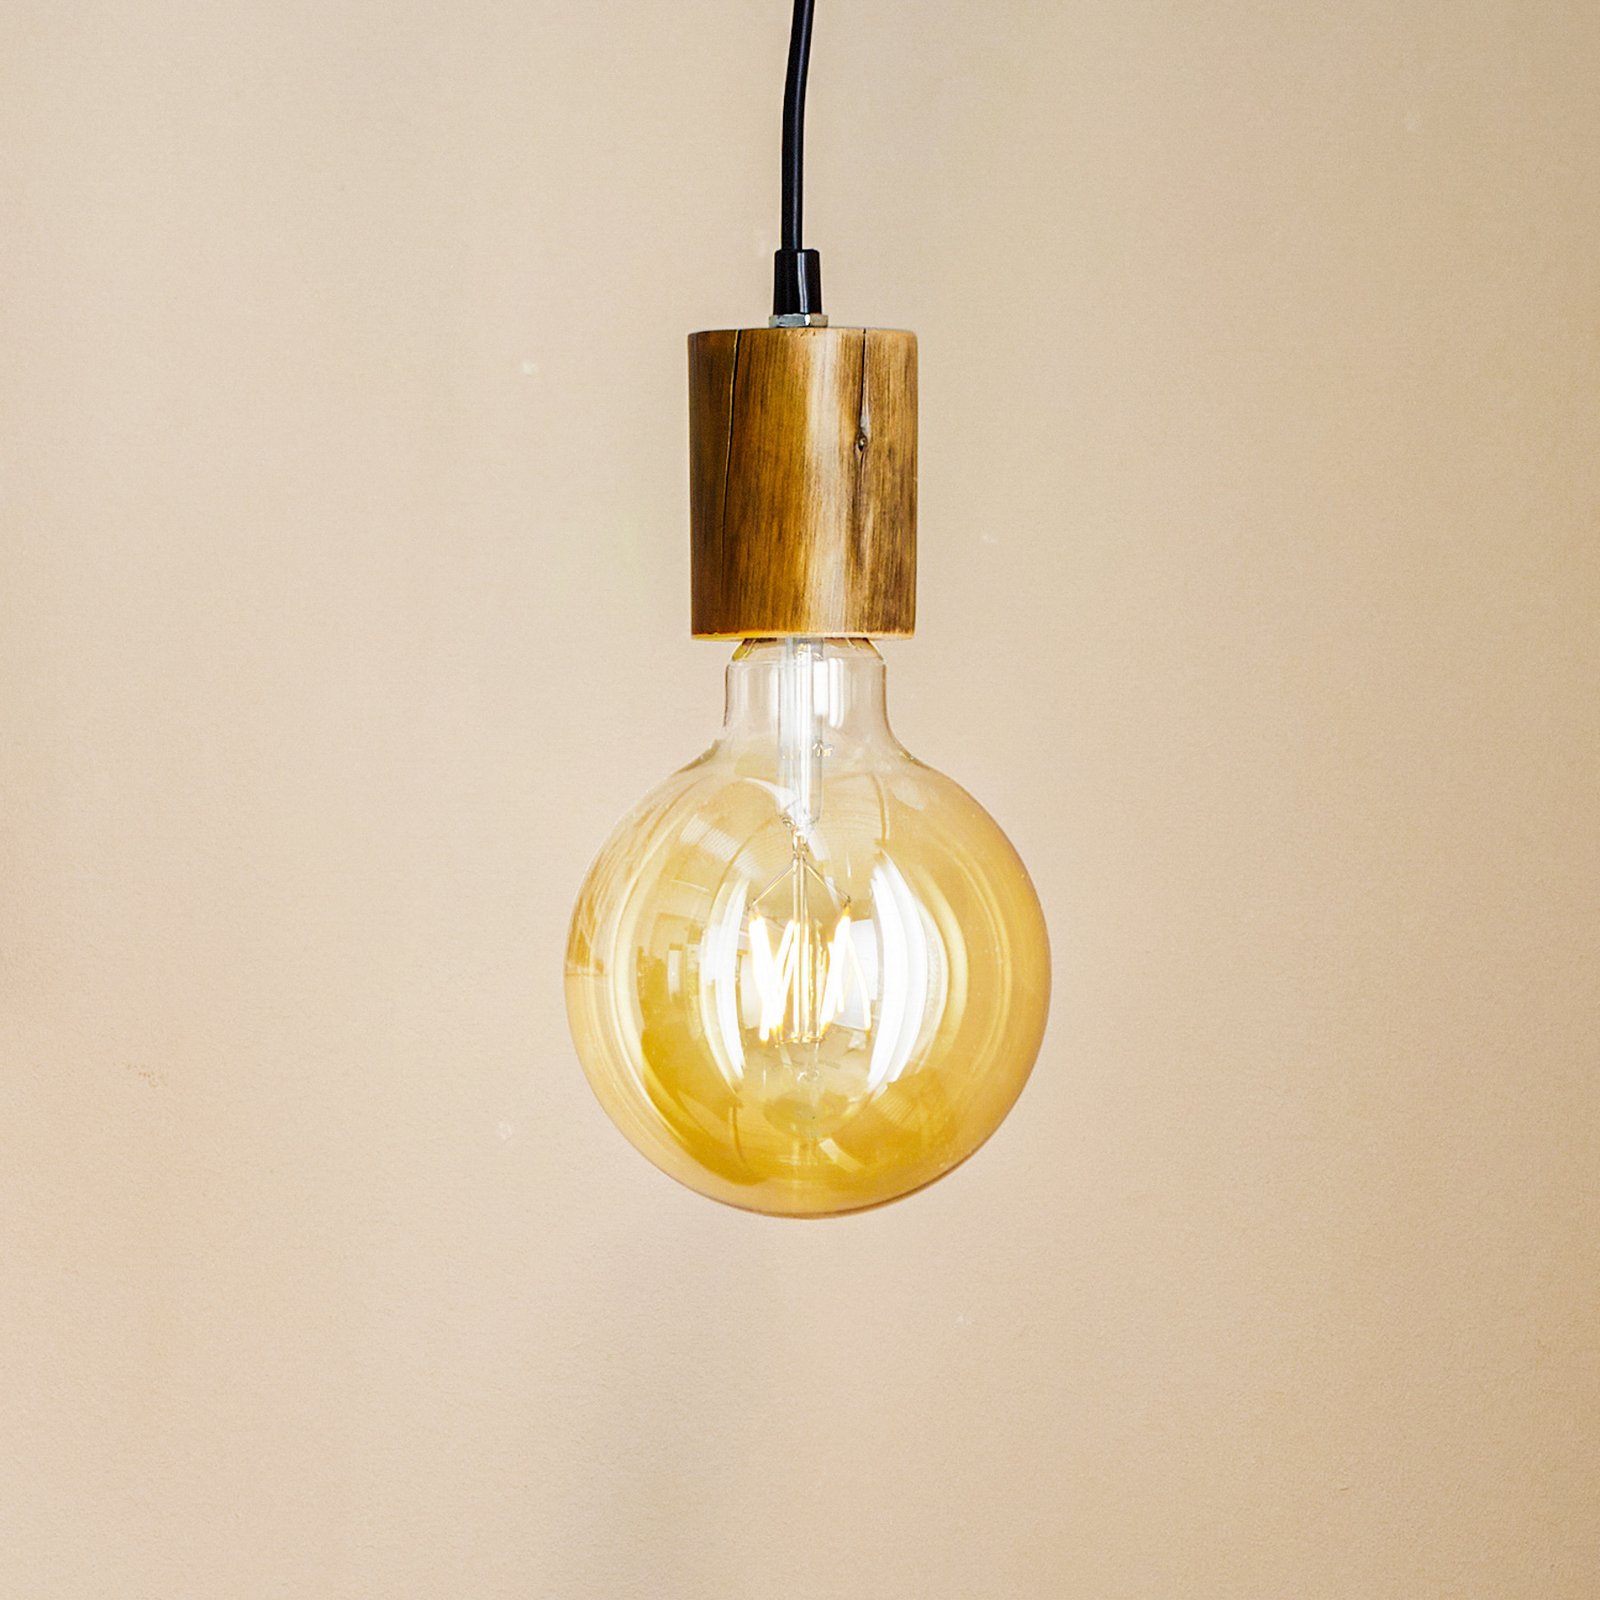 Tronco pendant light, 1-bulb, wooden pendant 8 cm